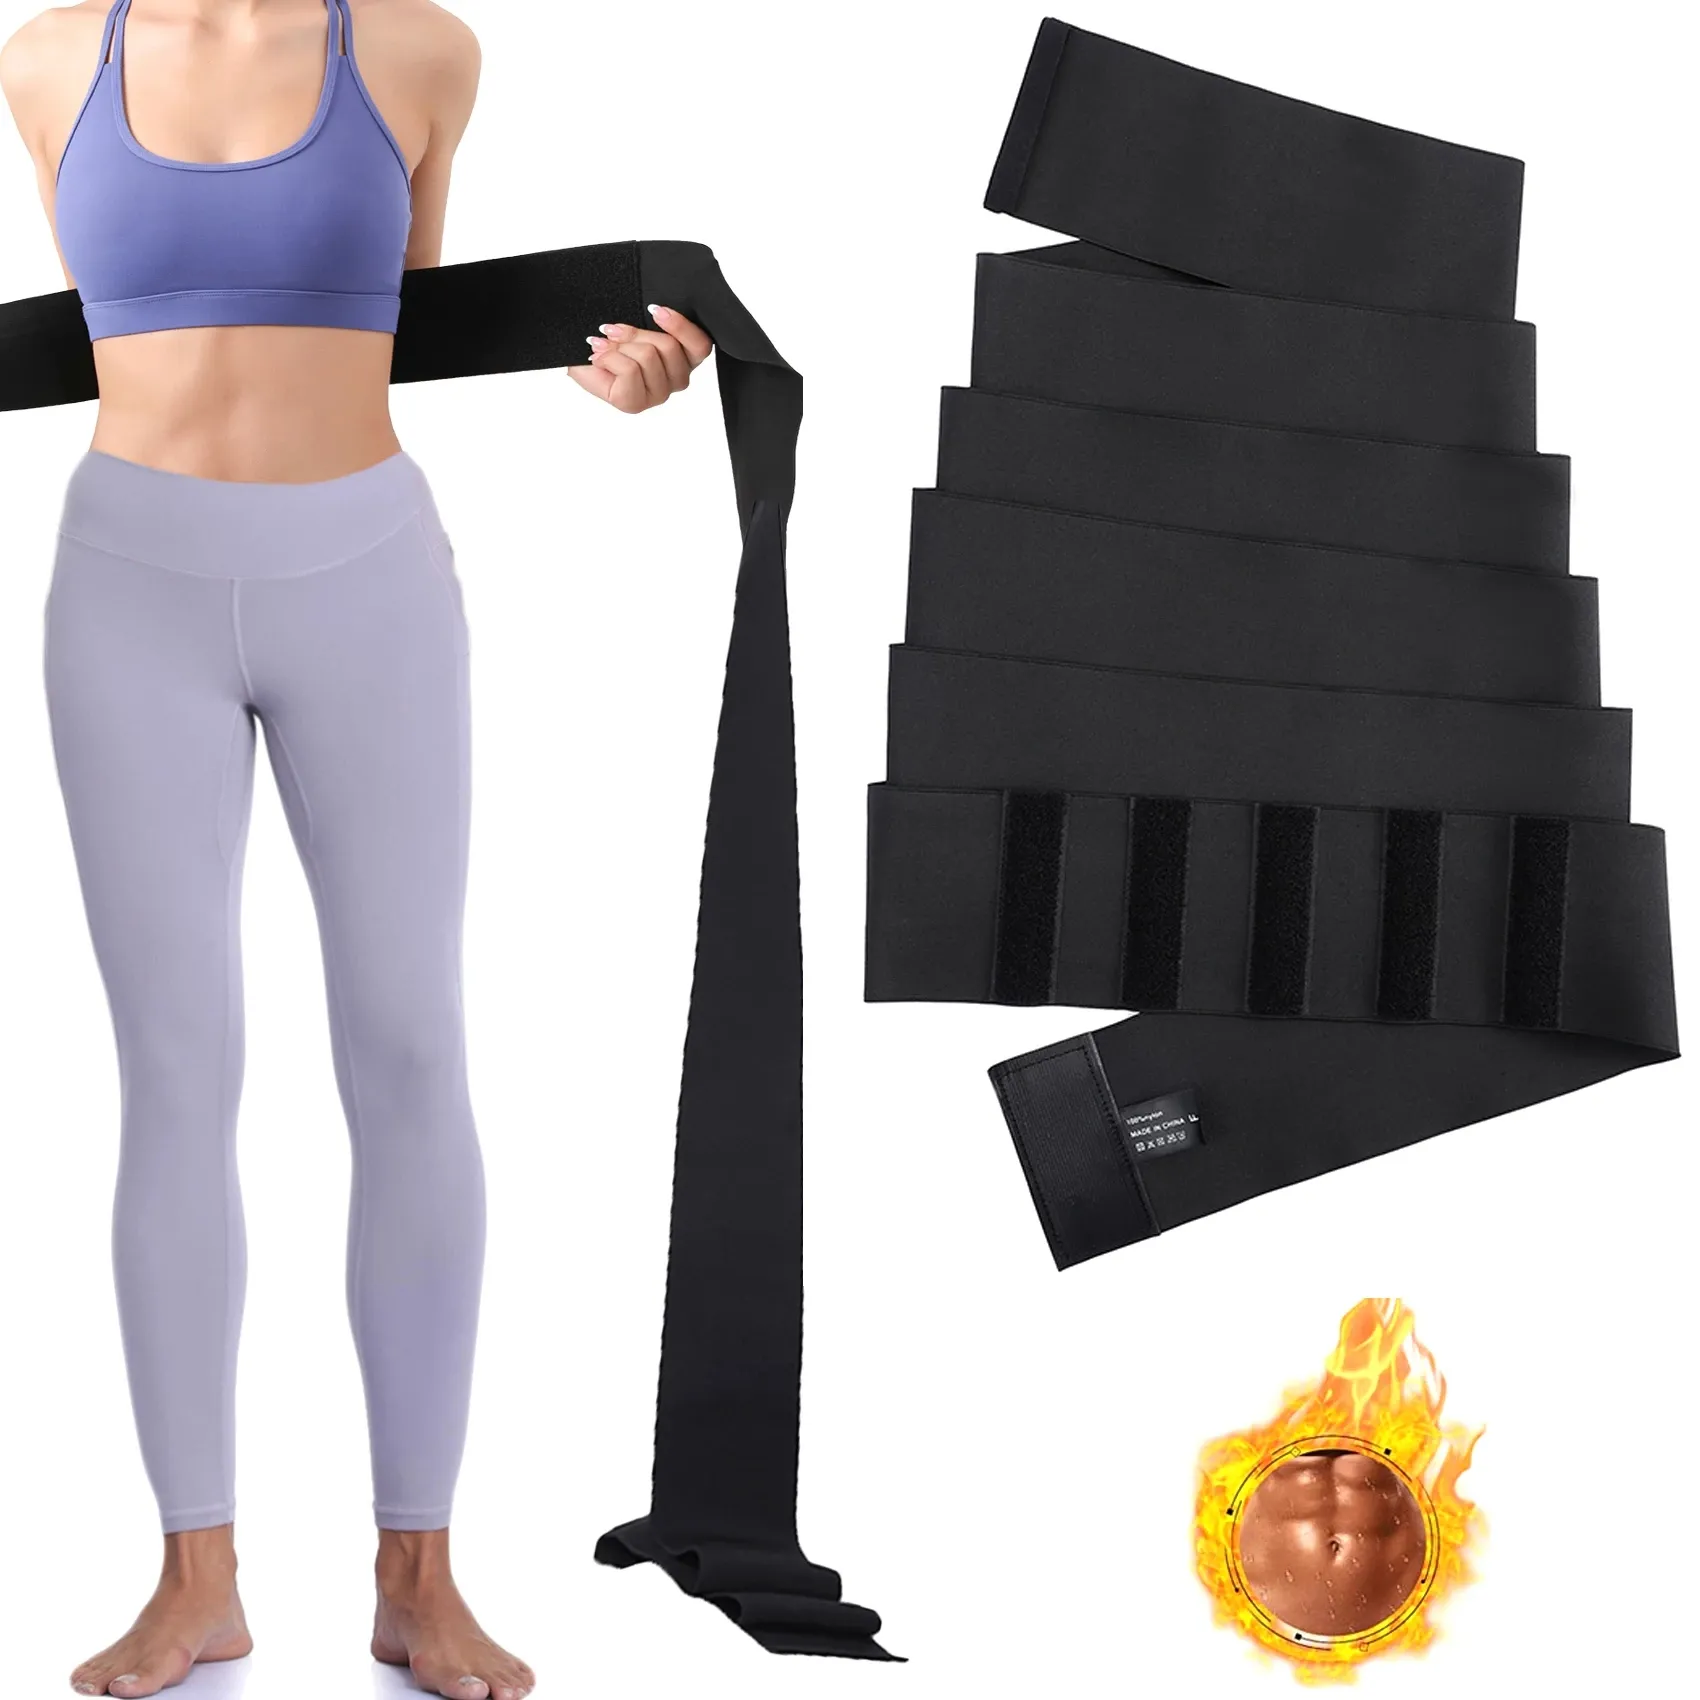 Allenatore della vita Snatch Bandage Wrap Tummy Sweat Sauna Trimmer Belt per le donne pancia Body Shaper fascia di compressione perdita di peso guaina